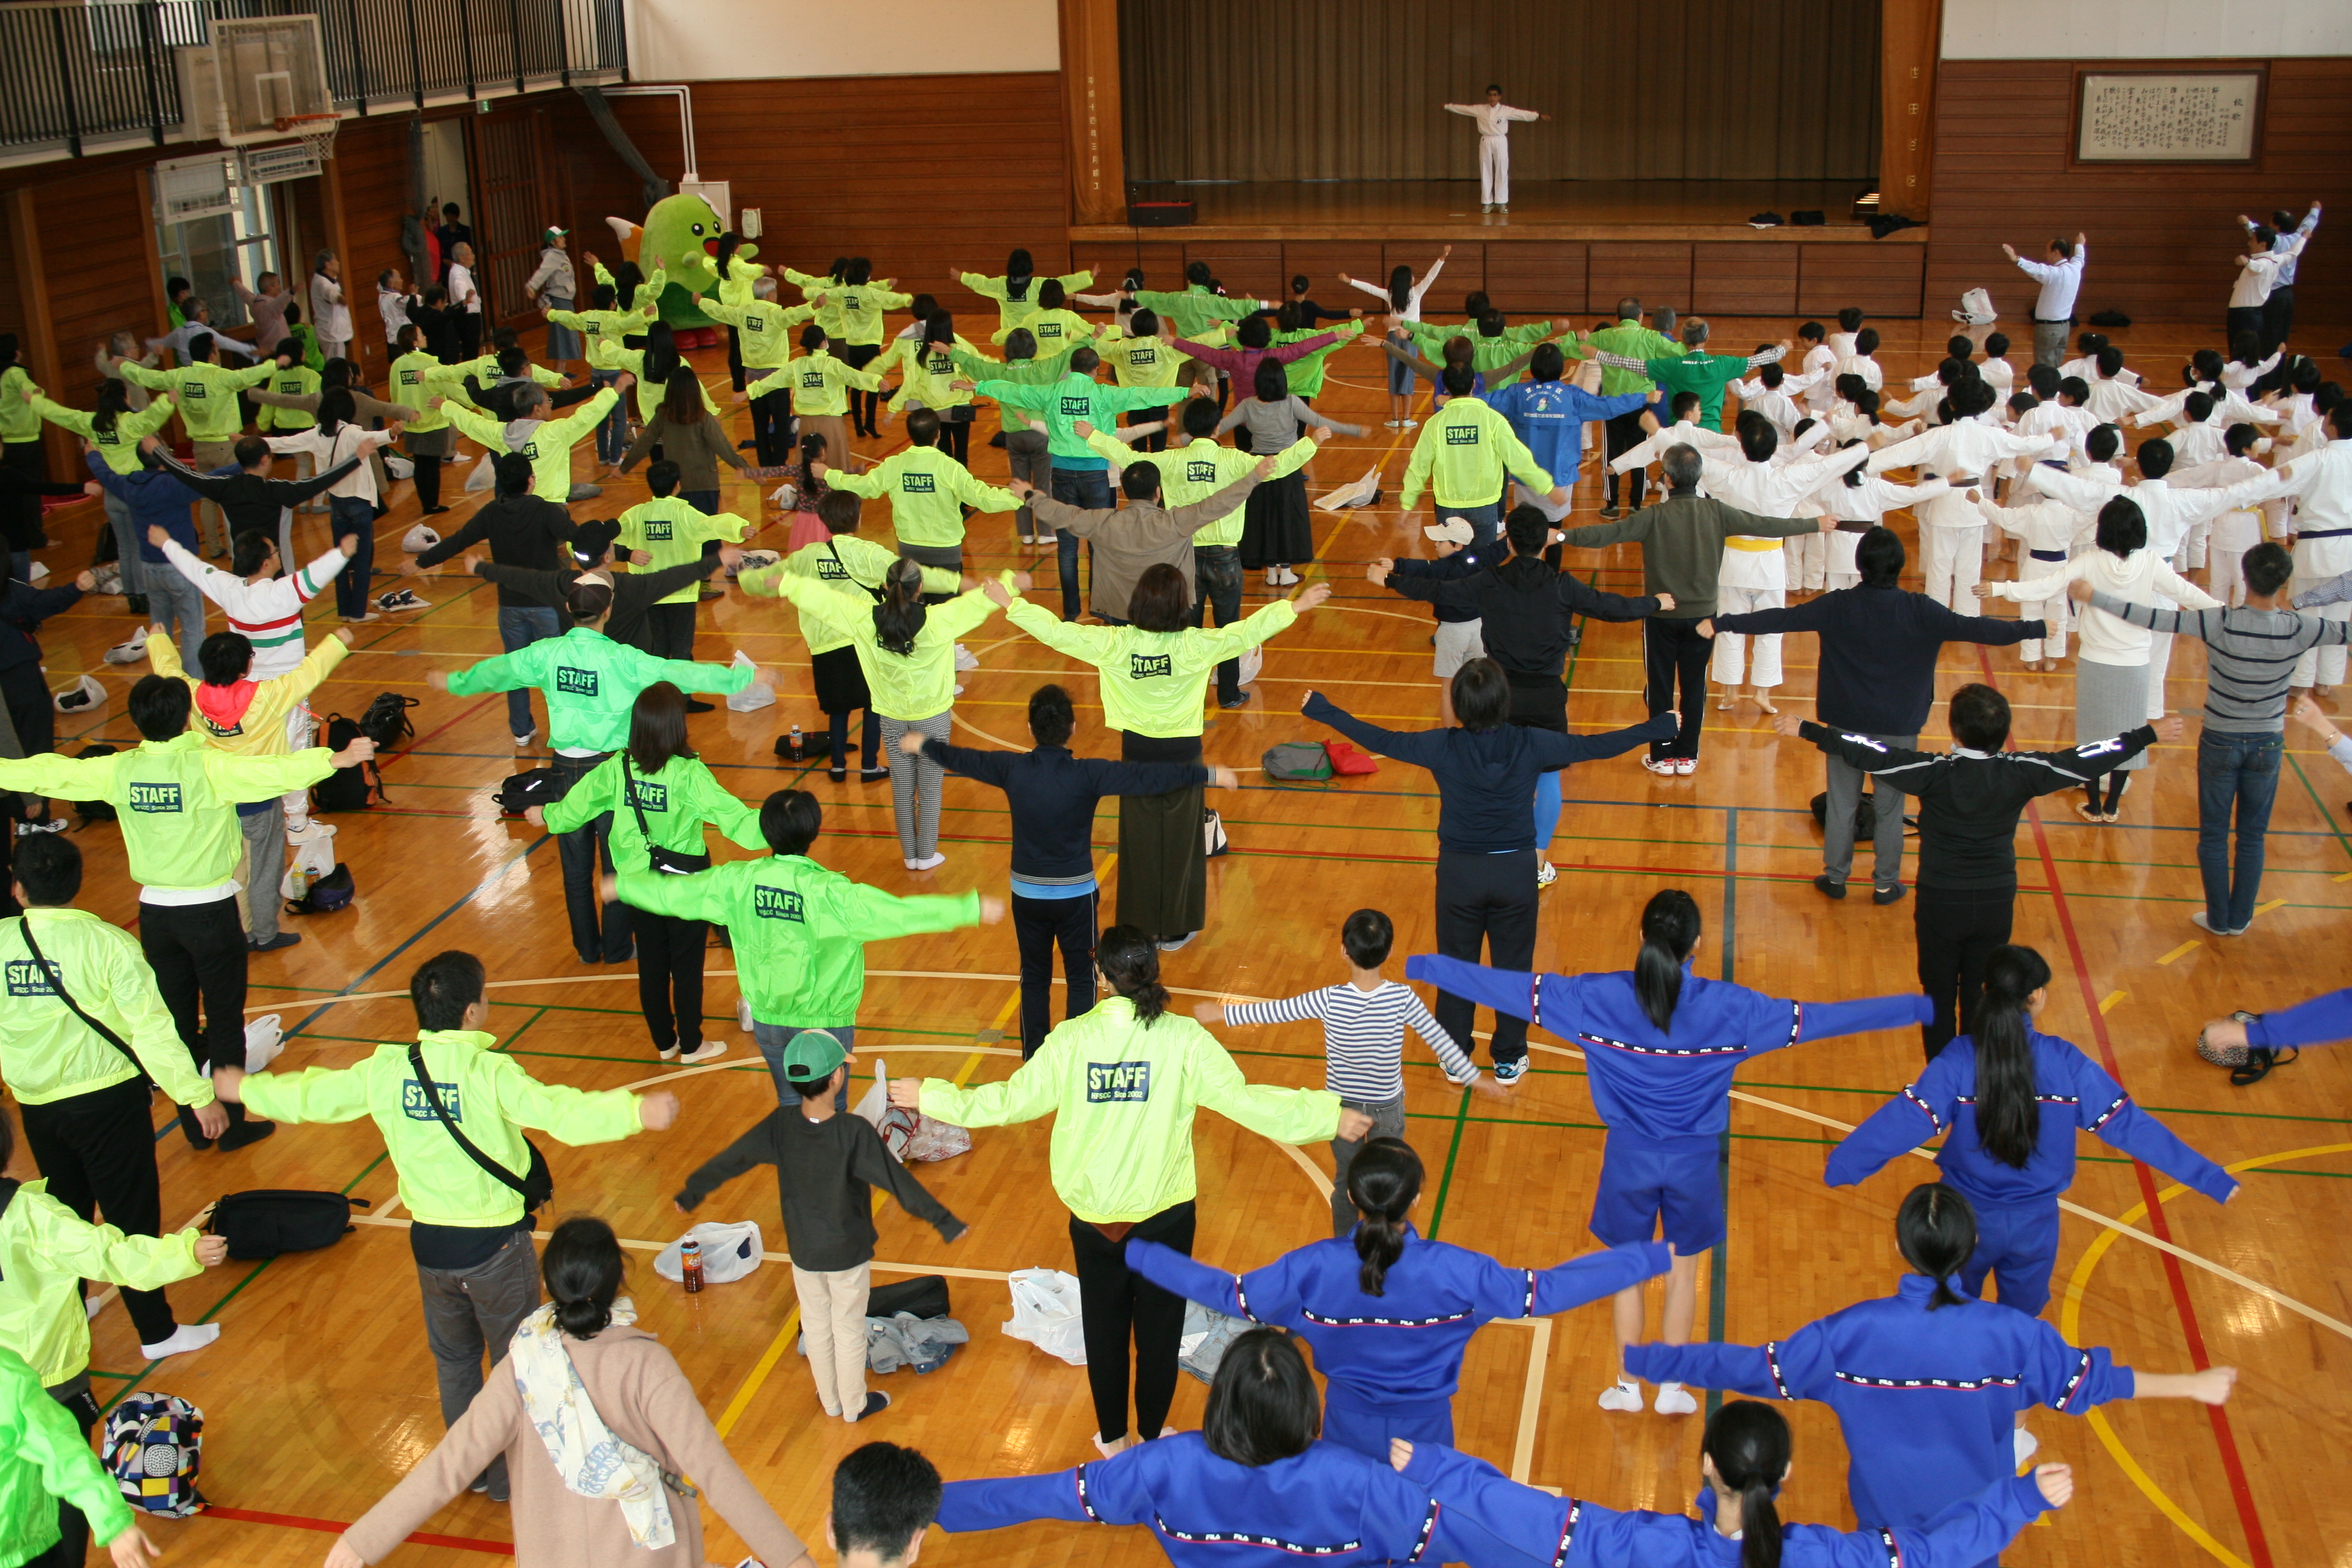 世田谷区ラジオ体操連盟 山上 睦子さんの模範演技でラジオ体操